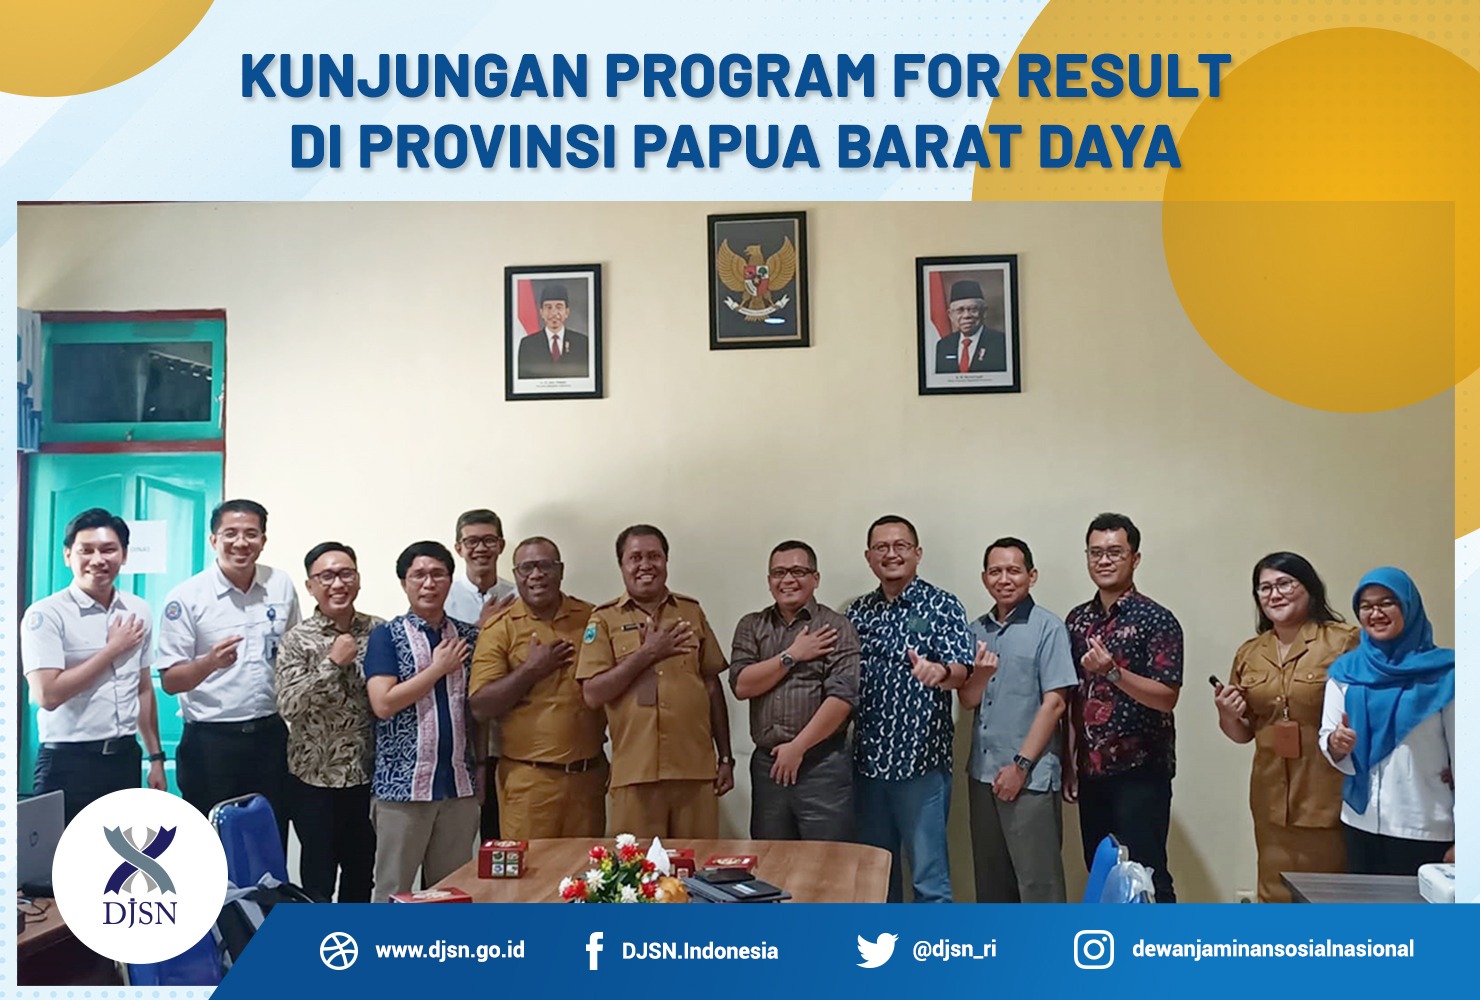 Kunjungan Program For Result di Provinsi Papua Barat Daya